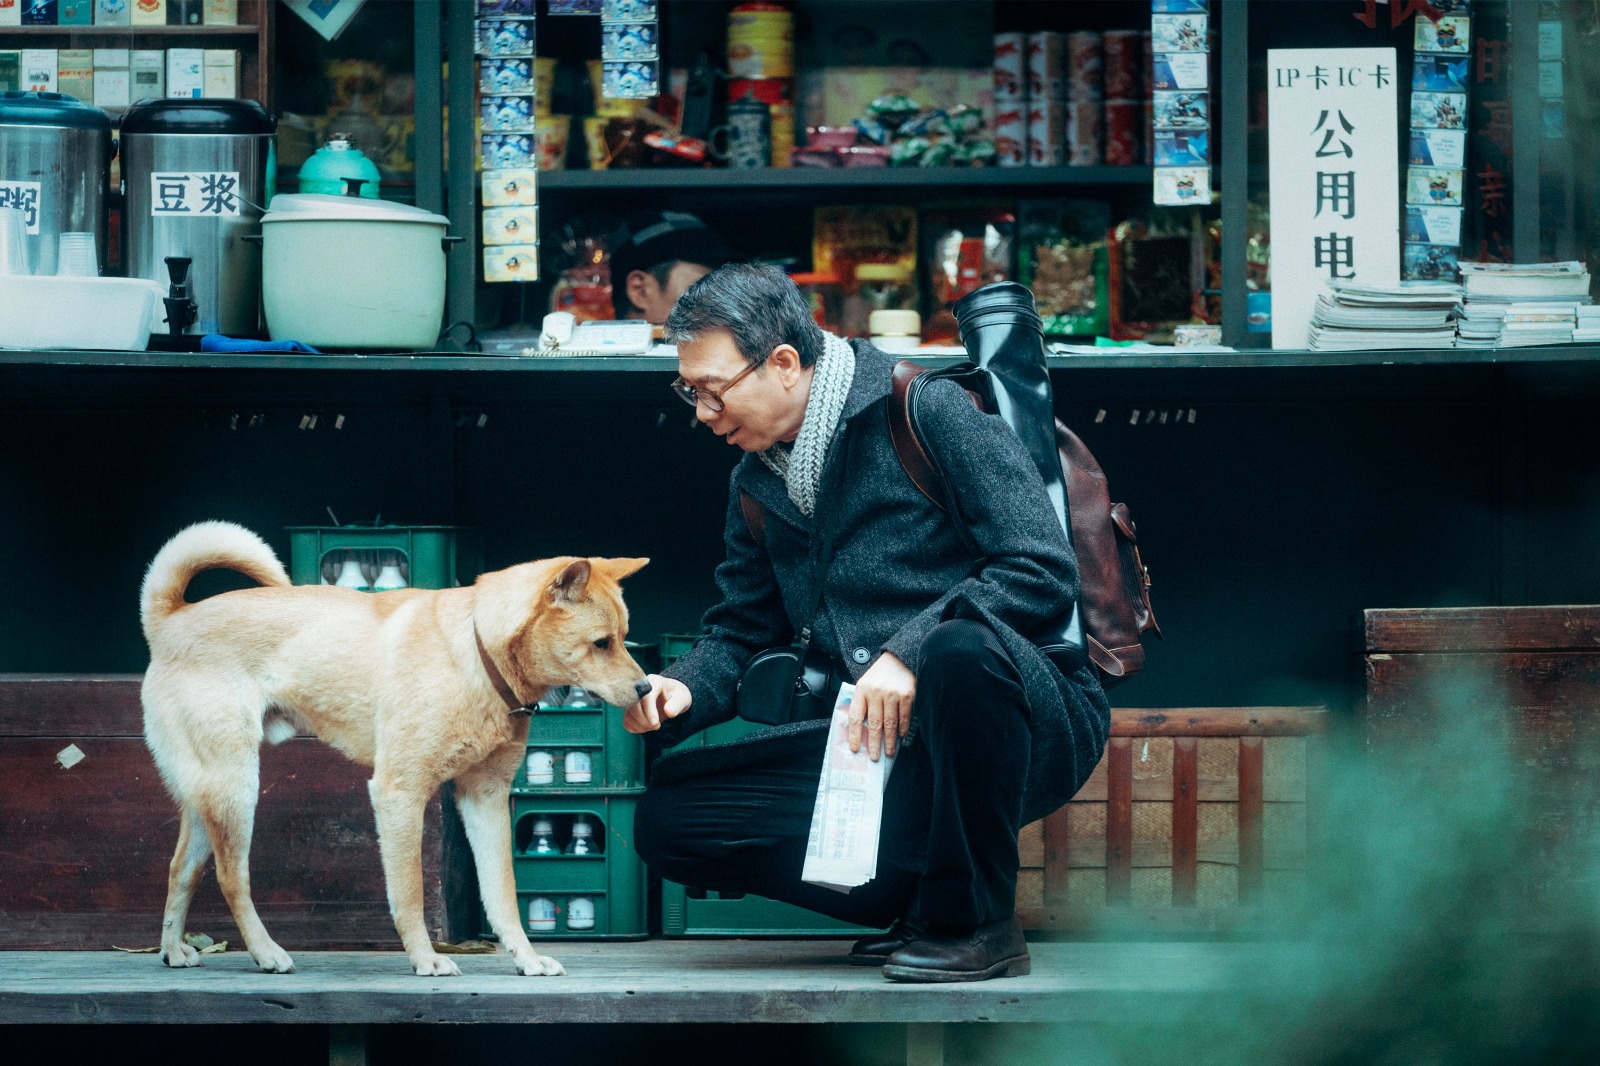 «Hachiko 2, Siempre a tu lado» la historia del perro más fiel llega a los cines